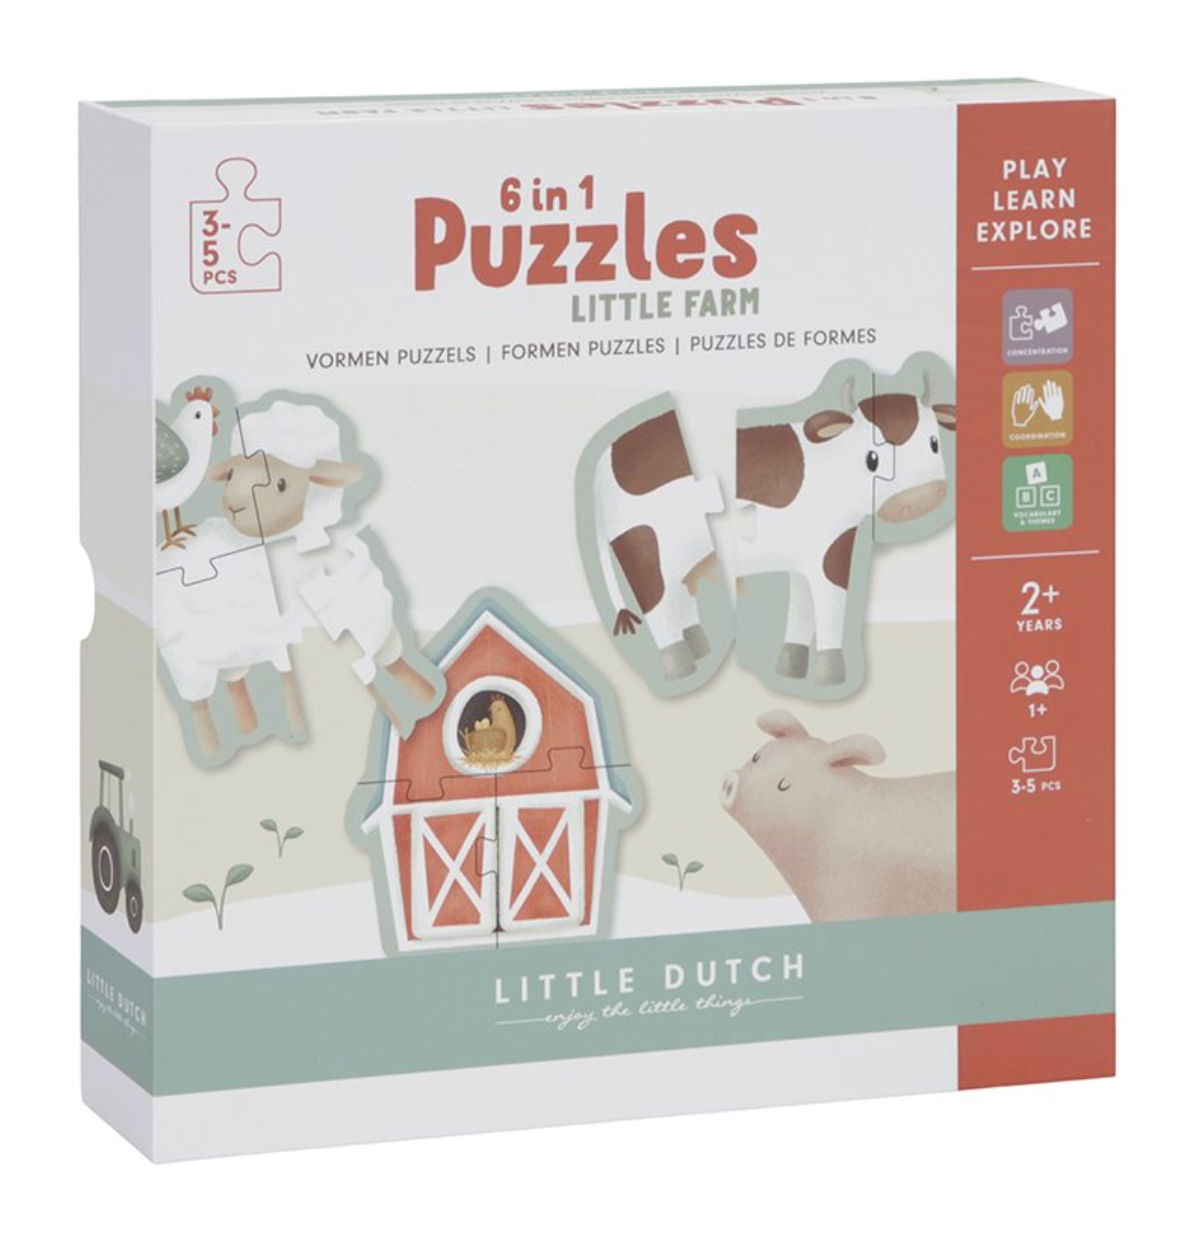 Little Dutch - Little Farm 6 in 1 Puzzles